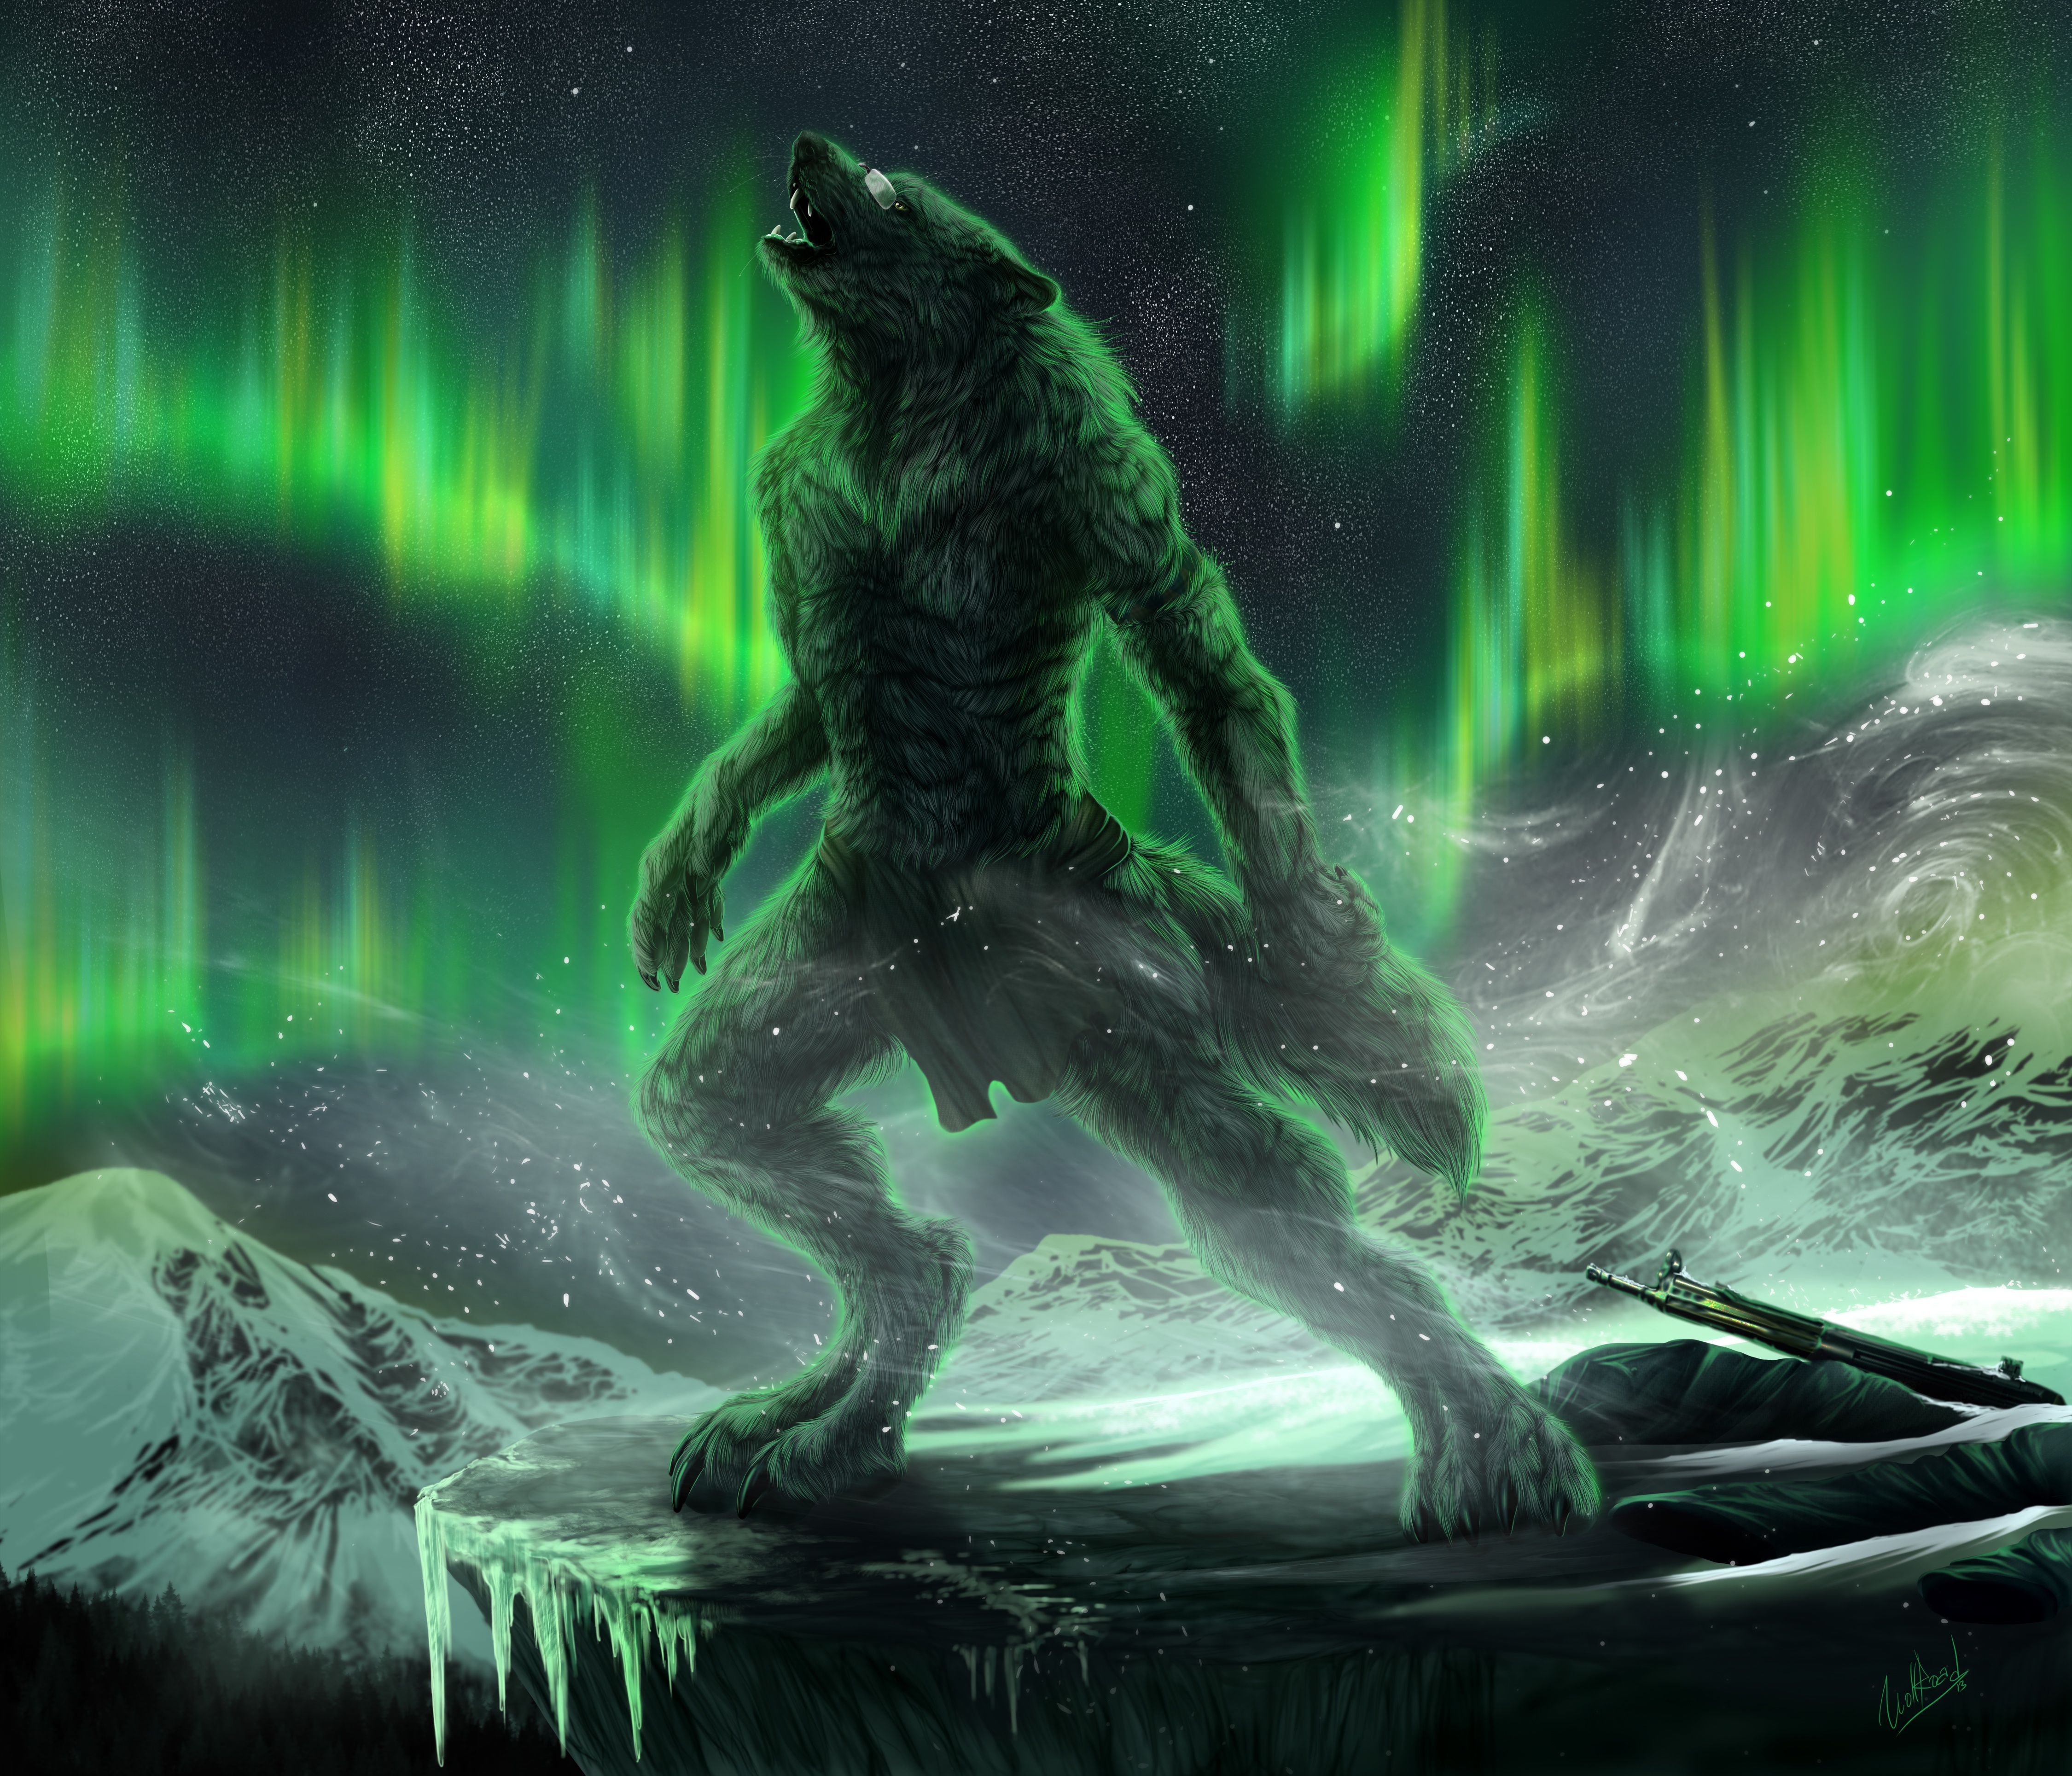 Dark Werewolf 4k Ultra HD Wallpaper Background Image